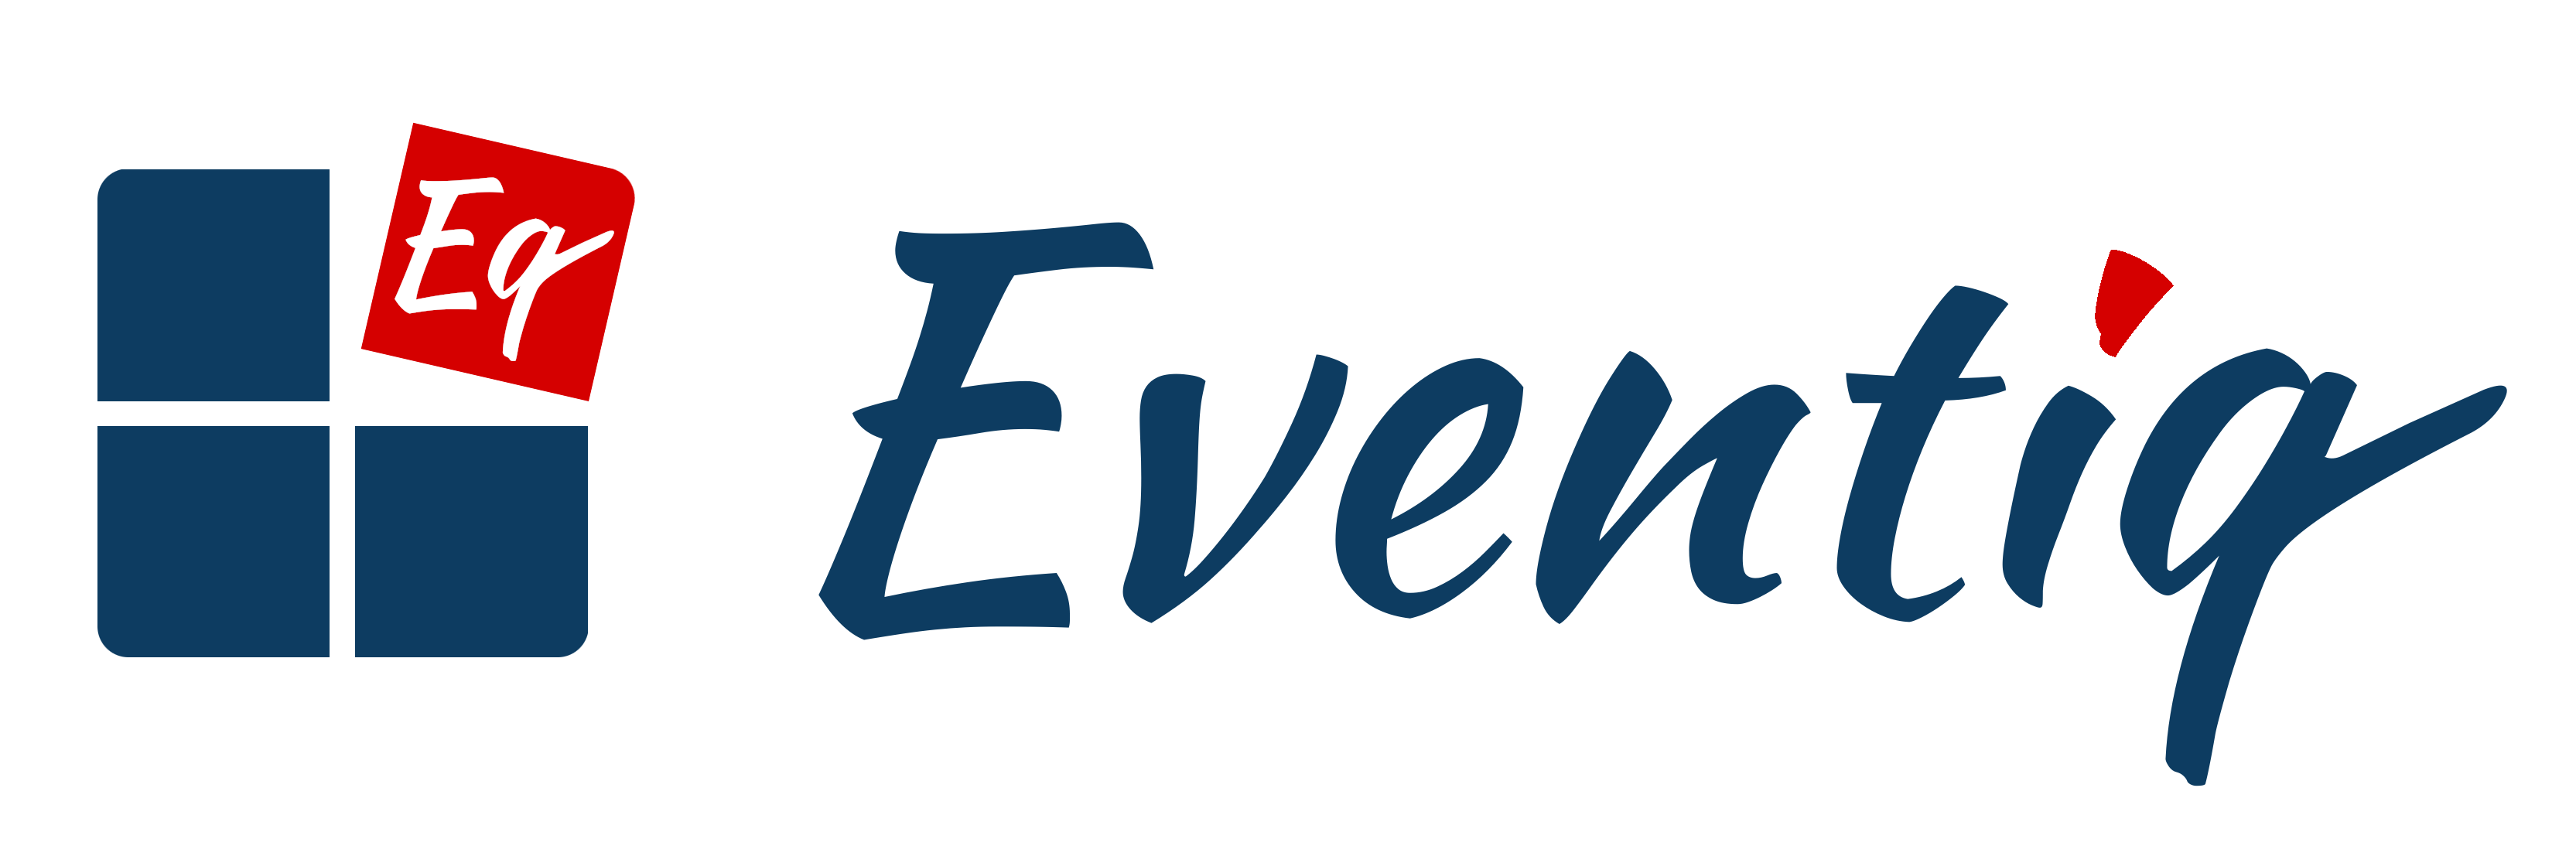 logo Eventiq